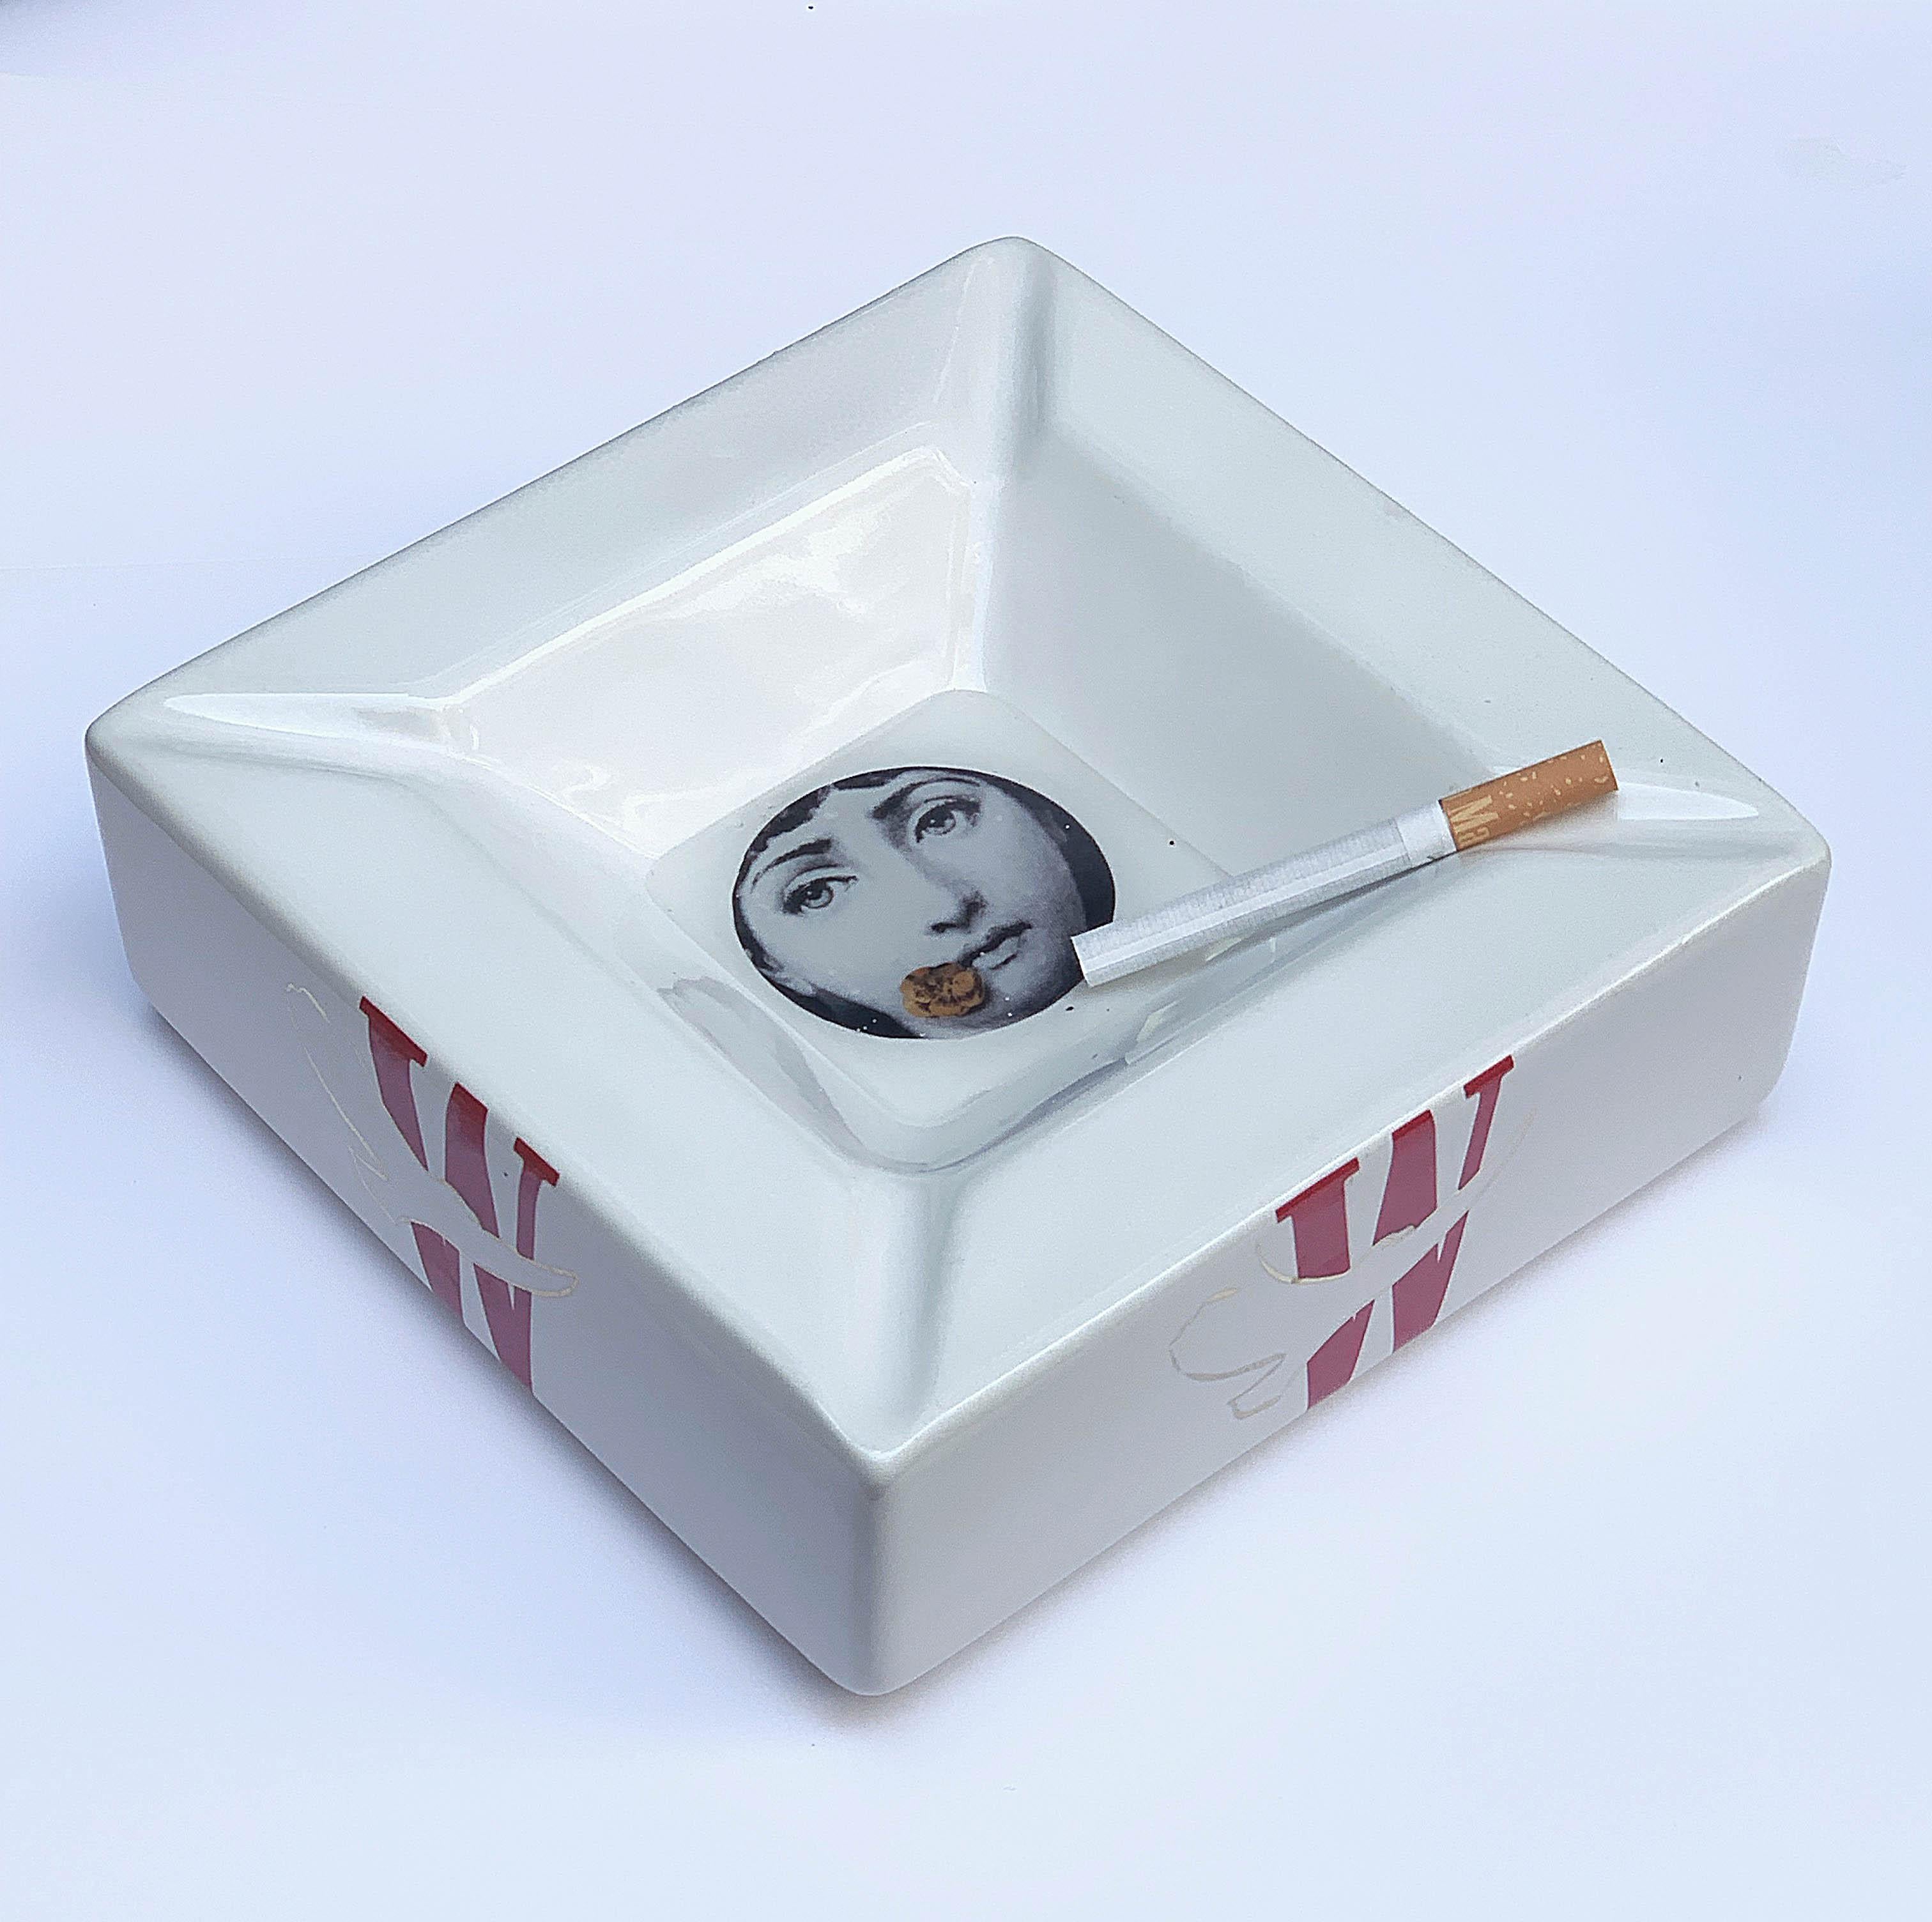 1980s ashtray